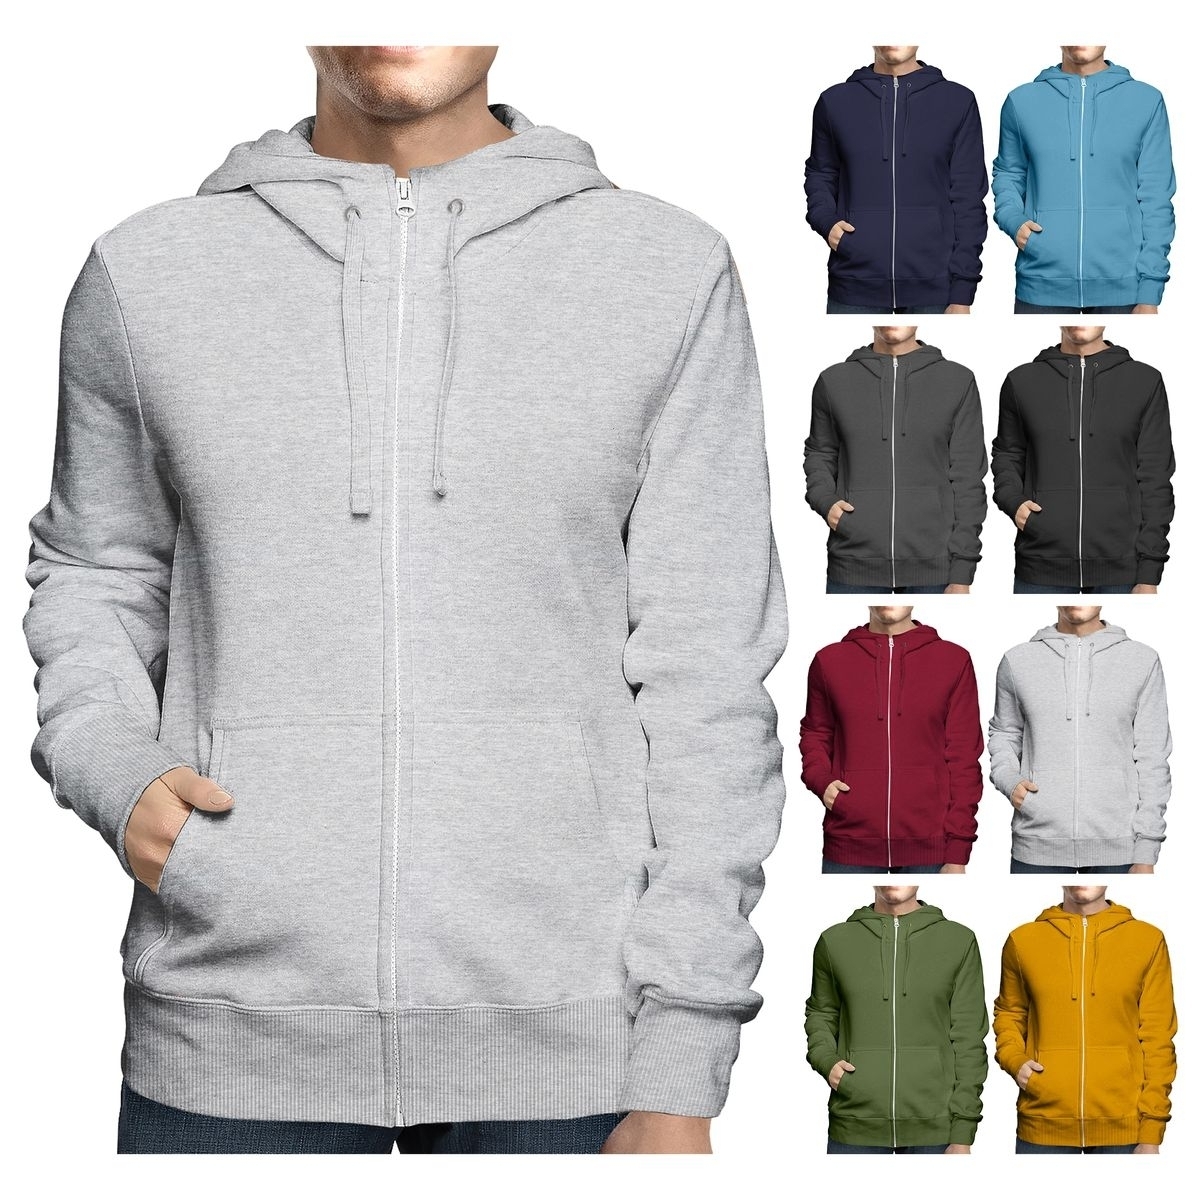 Men's Big & Tall Winter Warm Soft Cozy Full Zip-Up Fleece Lined Hoodie Sweatshirt - Charcoal, Medium